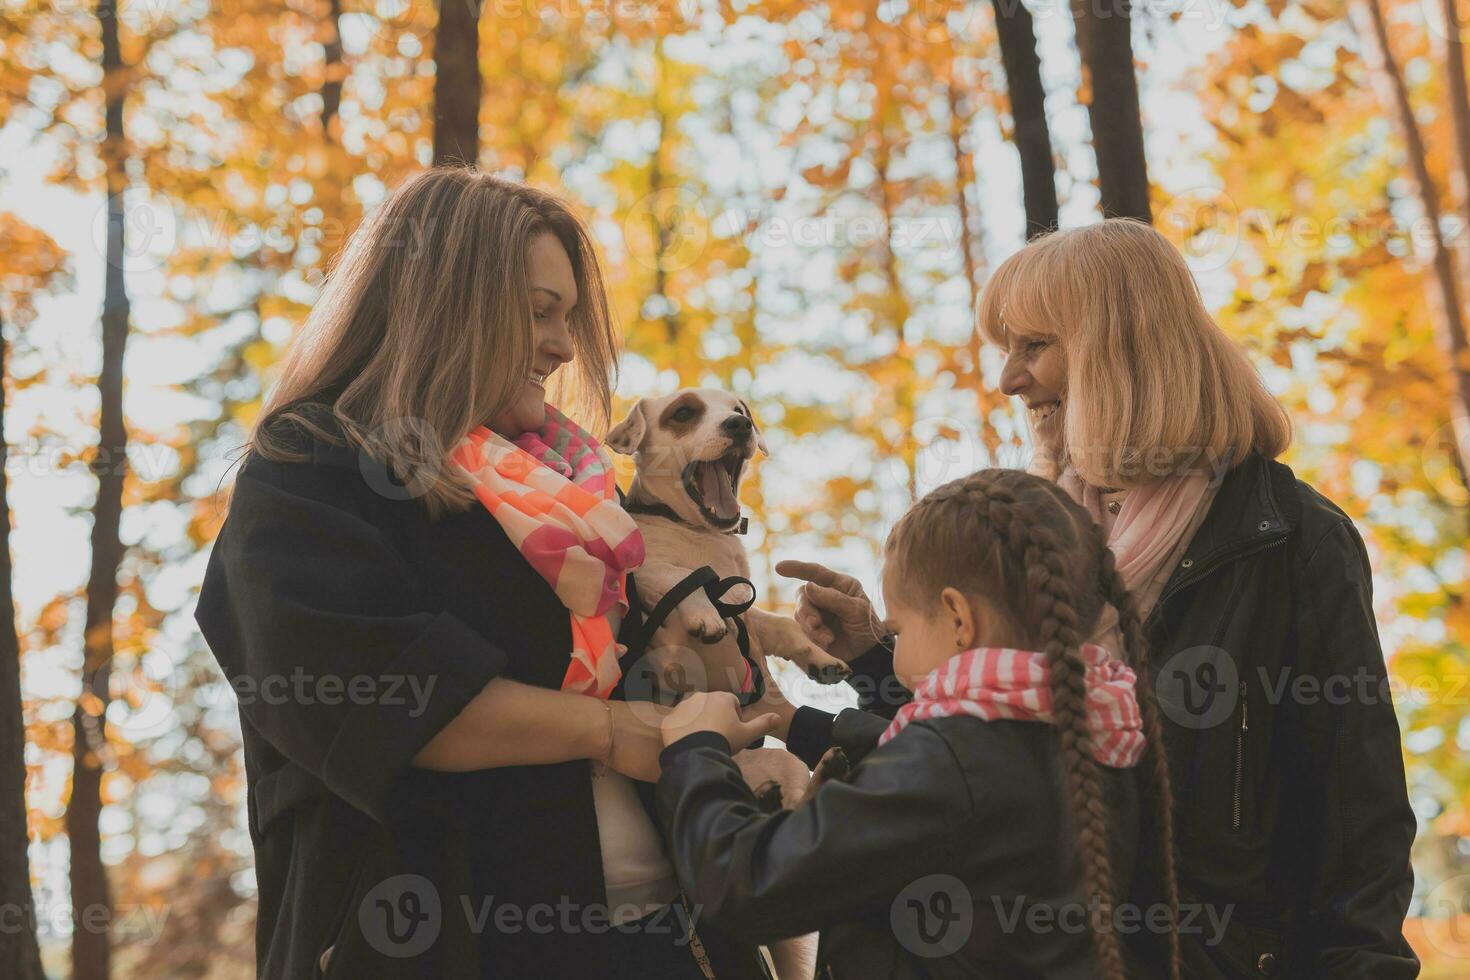 mormor och mor med barnbarn har roligt med hund i höst säsong. generation, fritid och familj begrepp foto